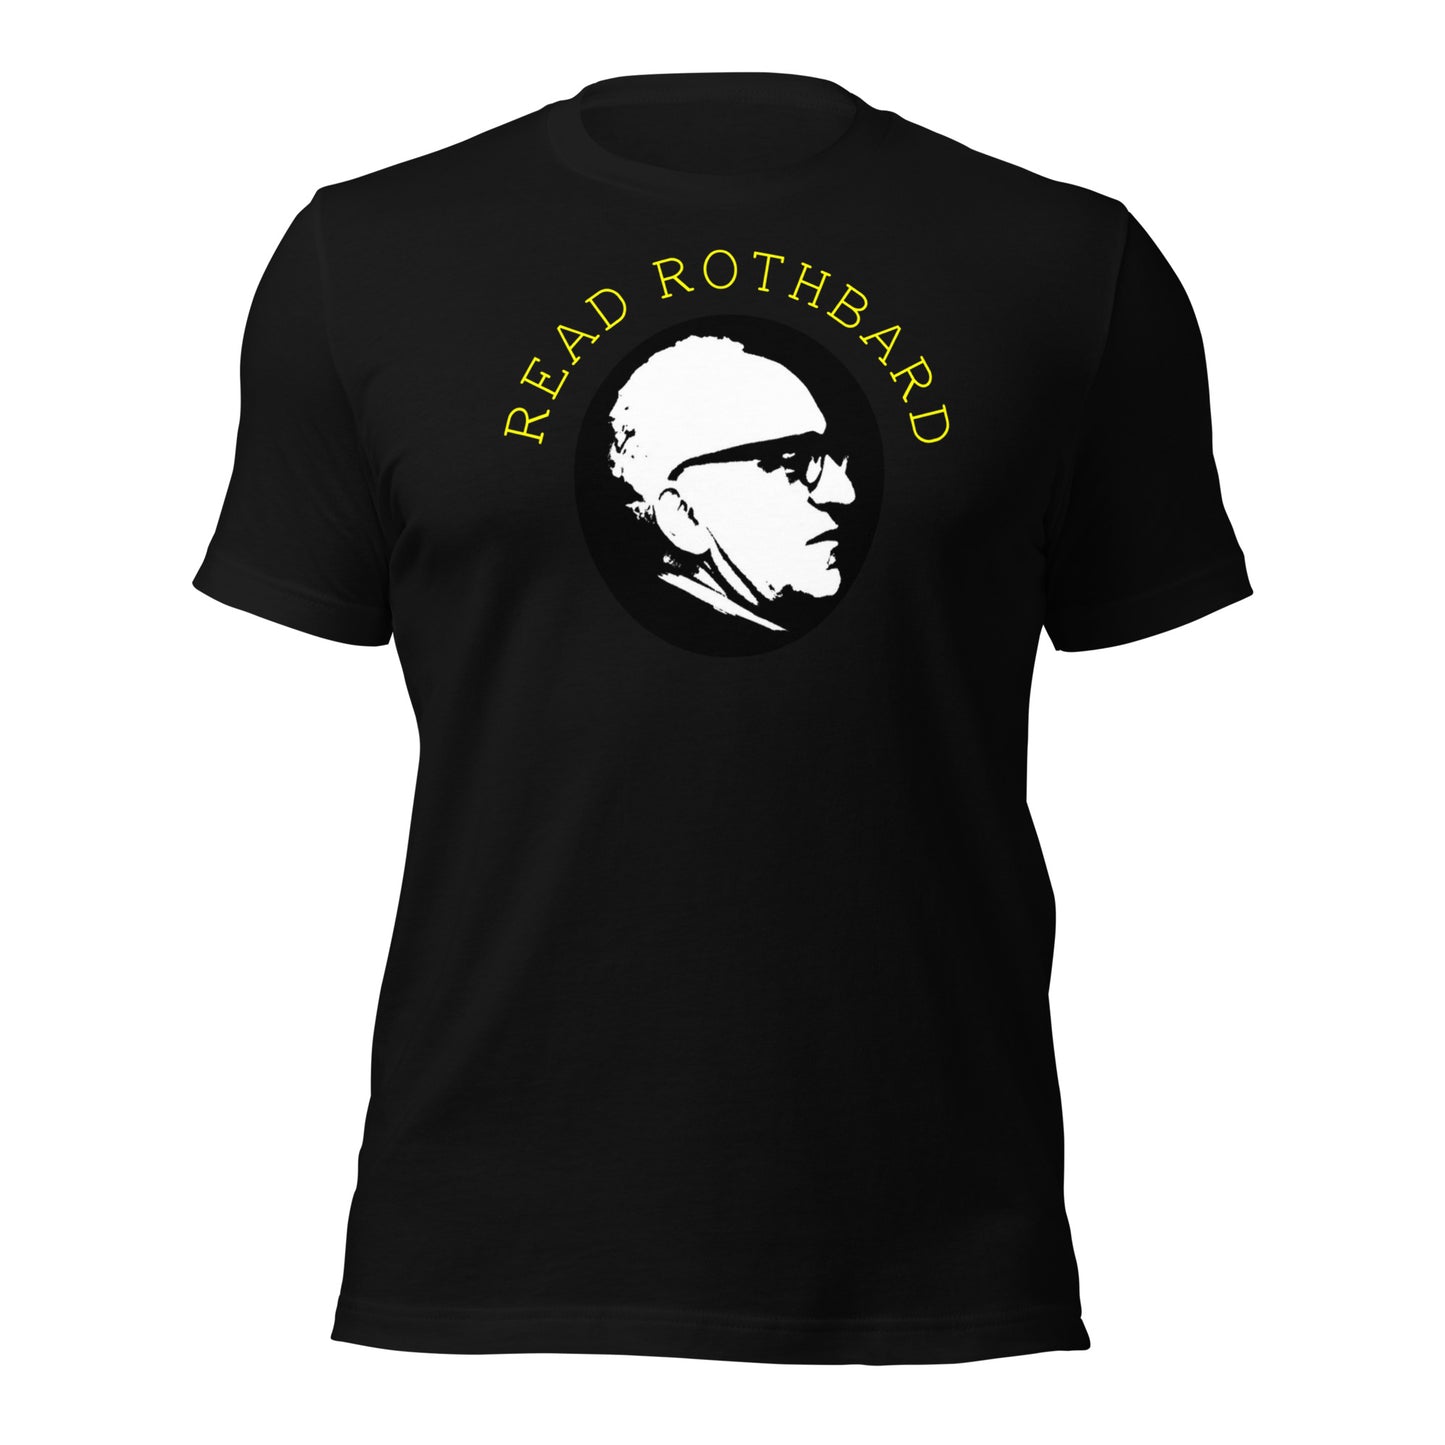 Anarchy Wear Gold "Read Rothbard" Unisex t-shirt